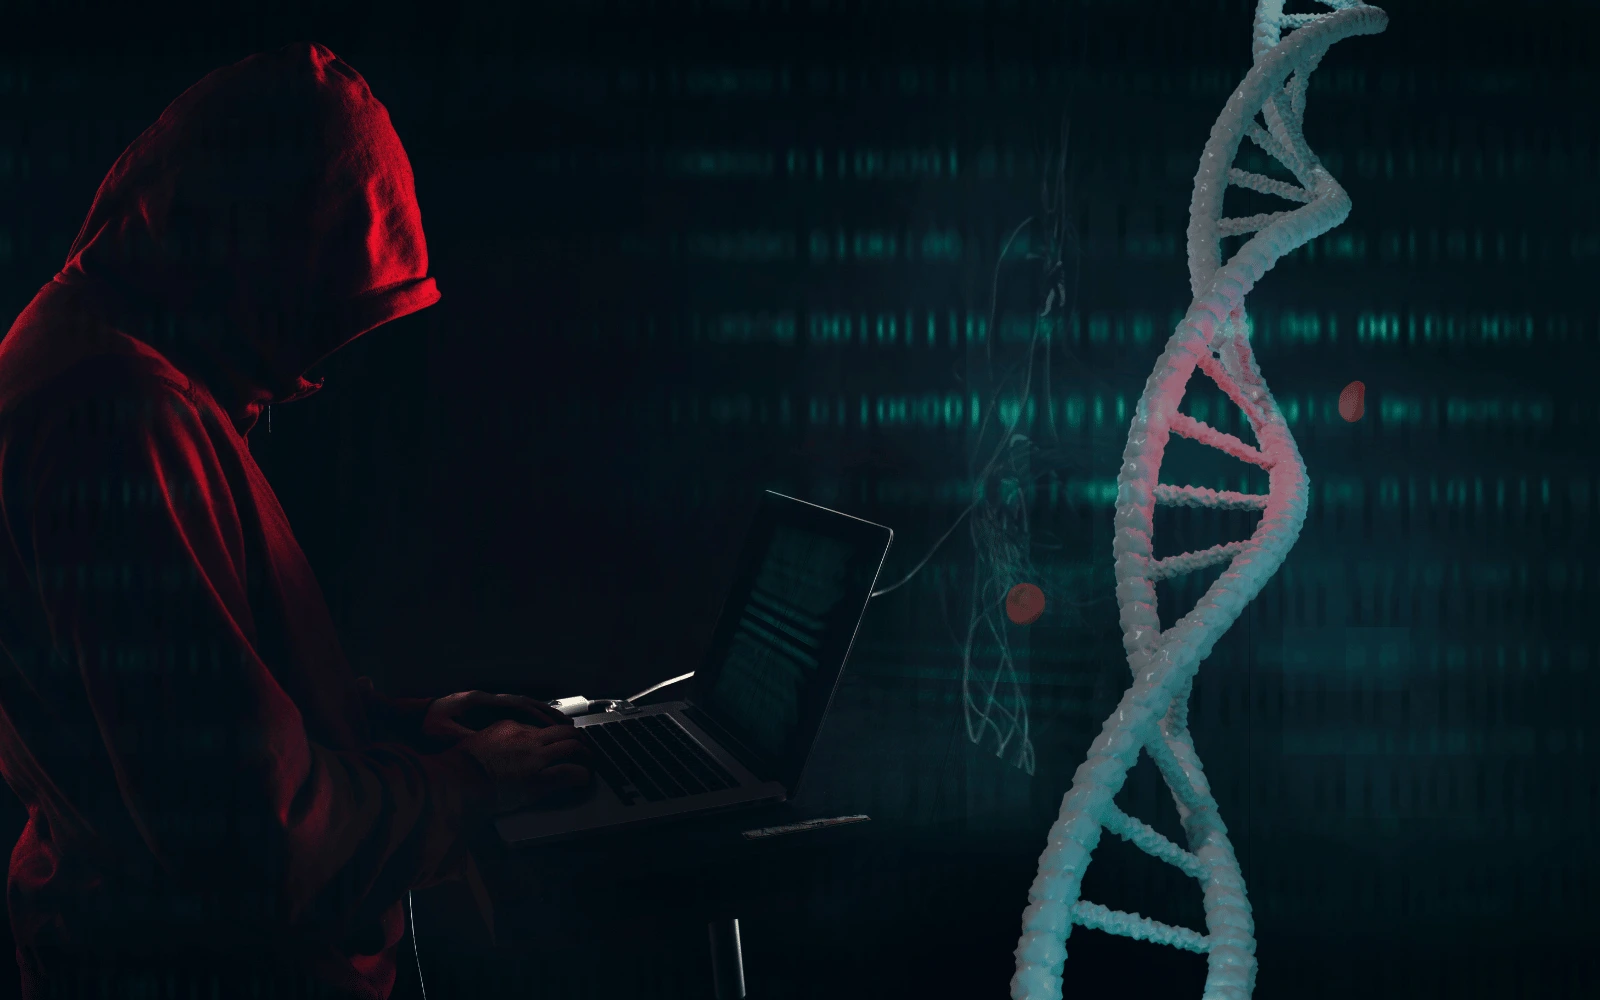 اطلاعات ژنتیکی میلیون‌ها کاربر 23andMe در دارک وب به فروش گذاشته شد